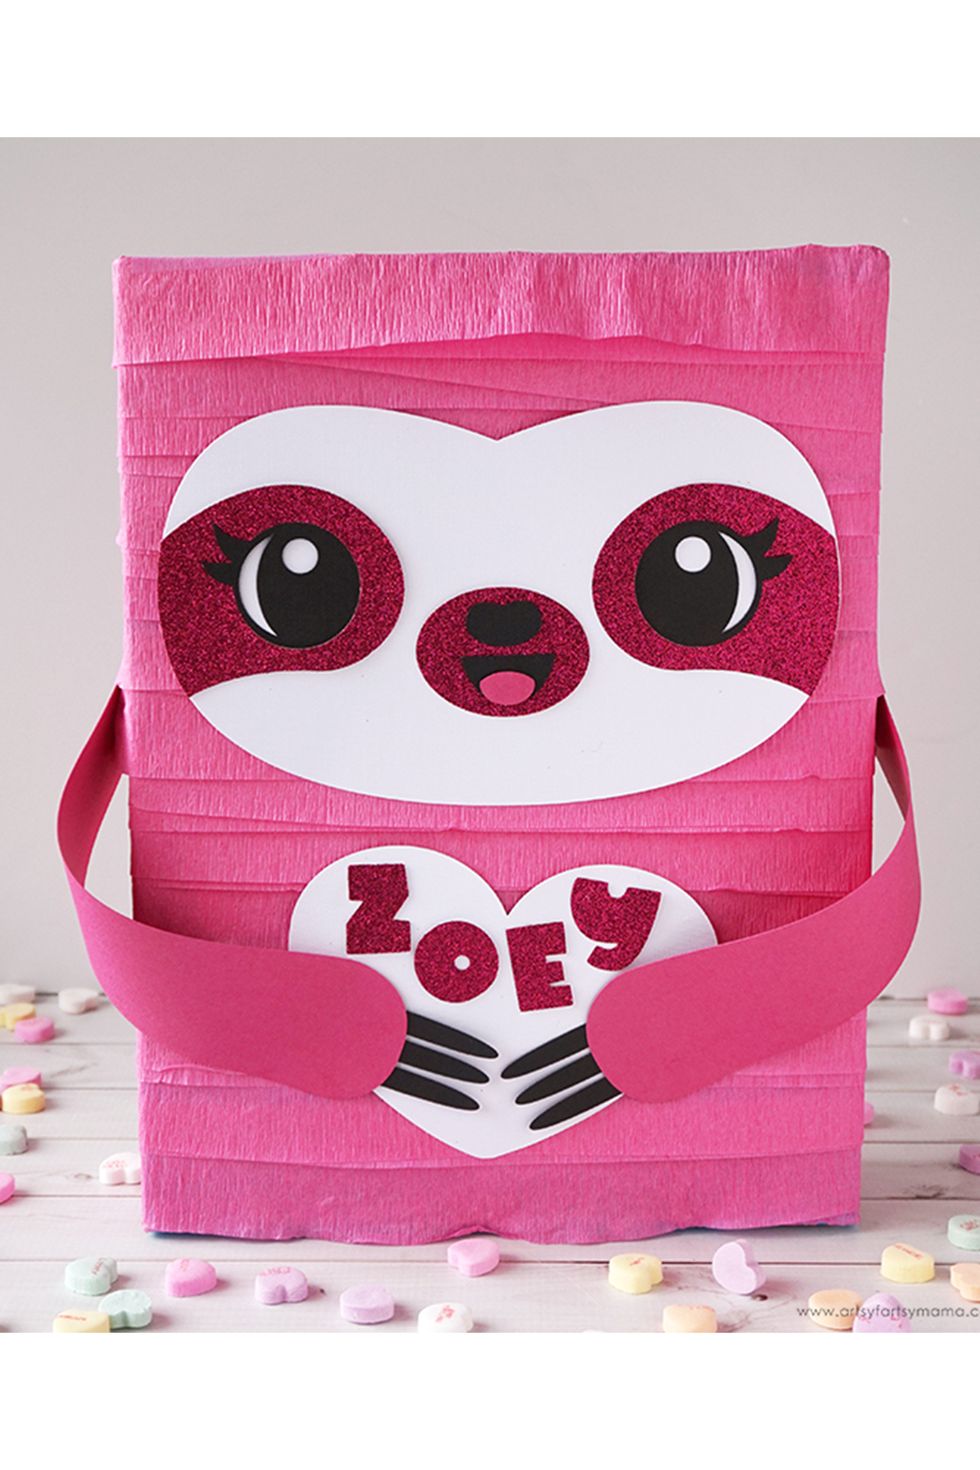 30 BEST Valentine Boxes! GENIUS IDEAS!